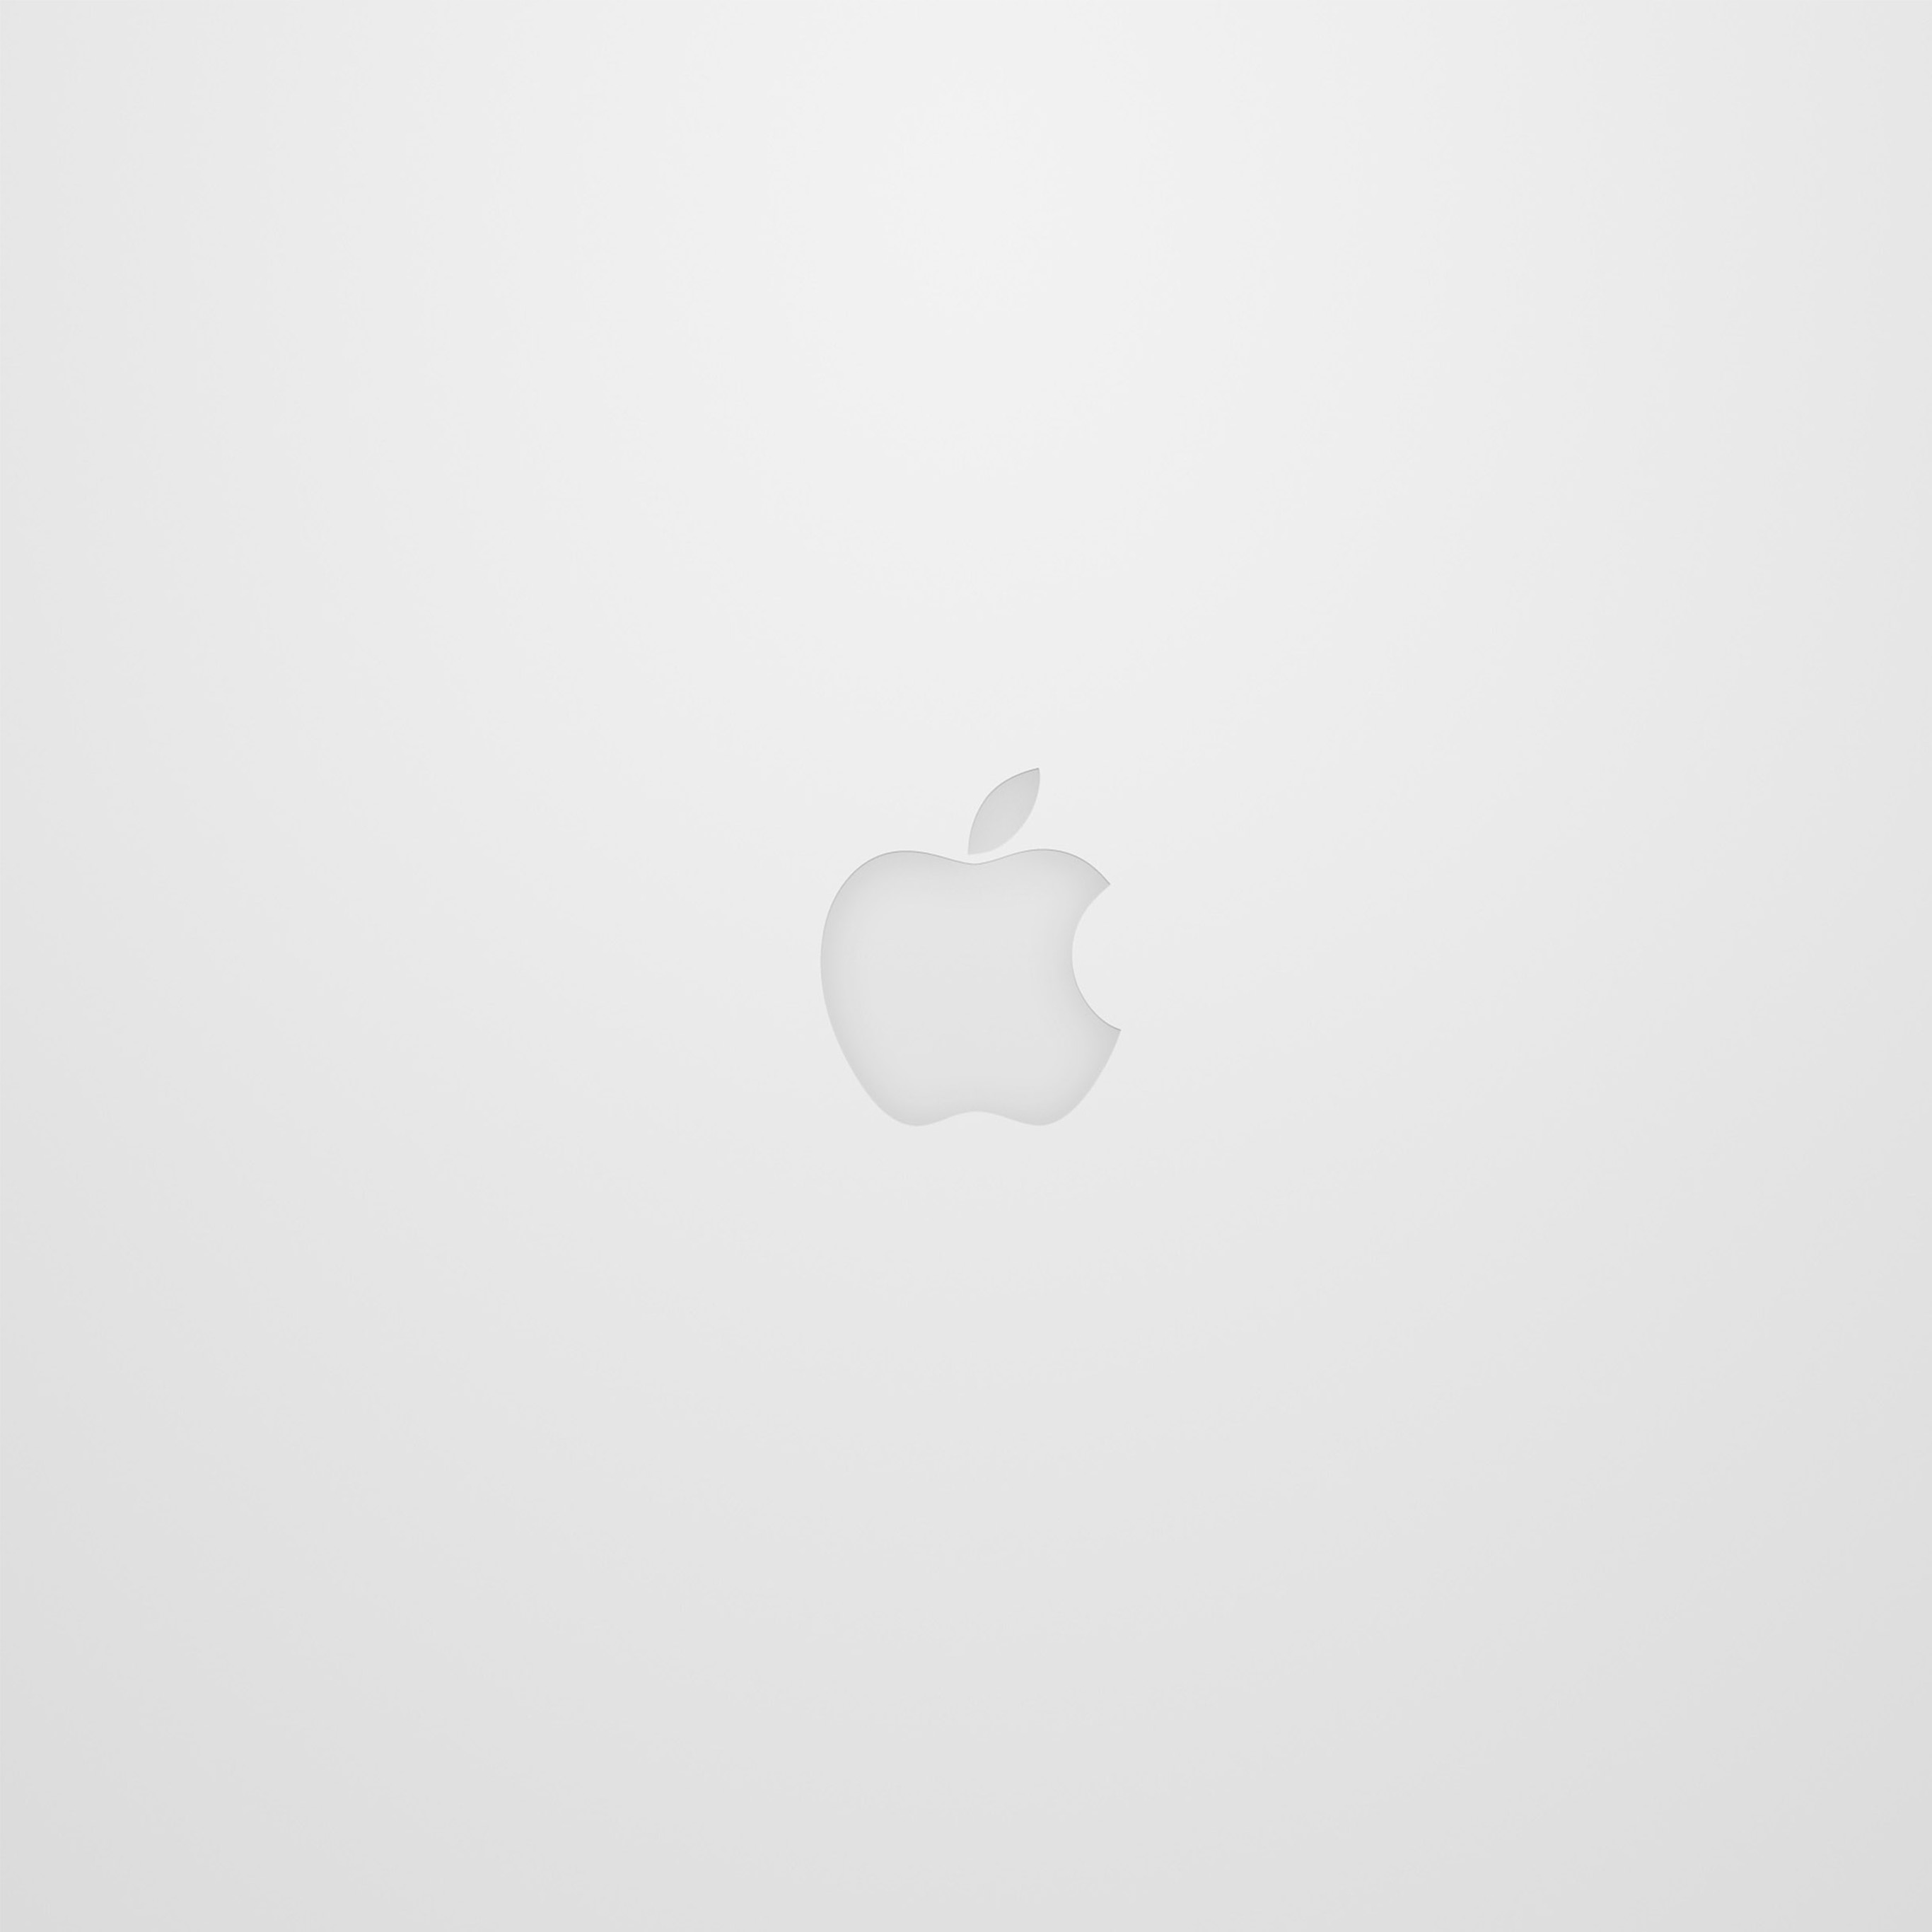 Ipad Proの壁紙はアップルマーク Apple Logo が一番 2732x2732 Naver まとめ